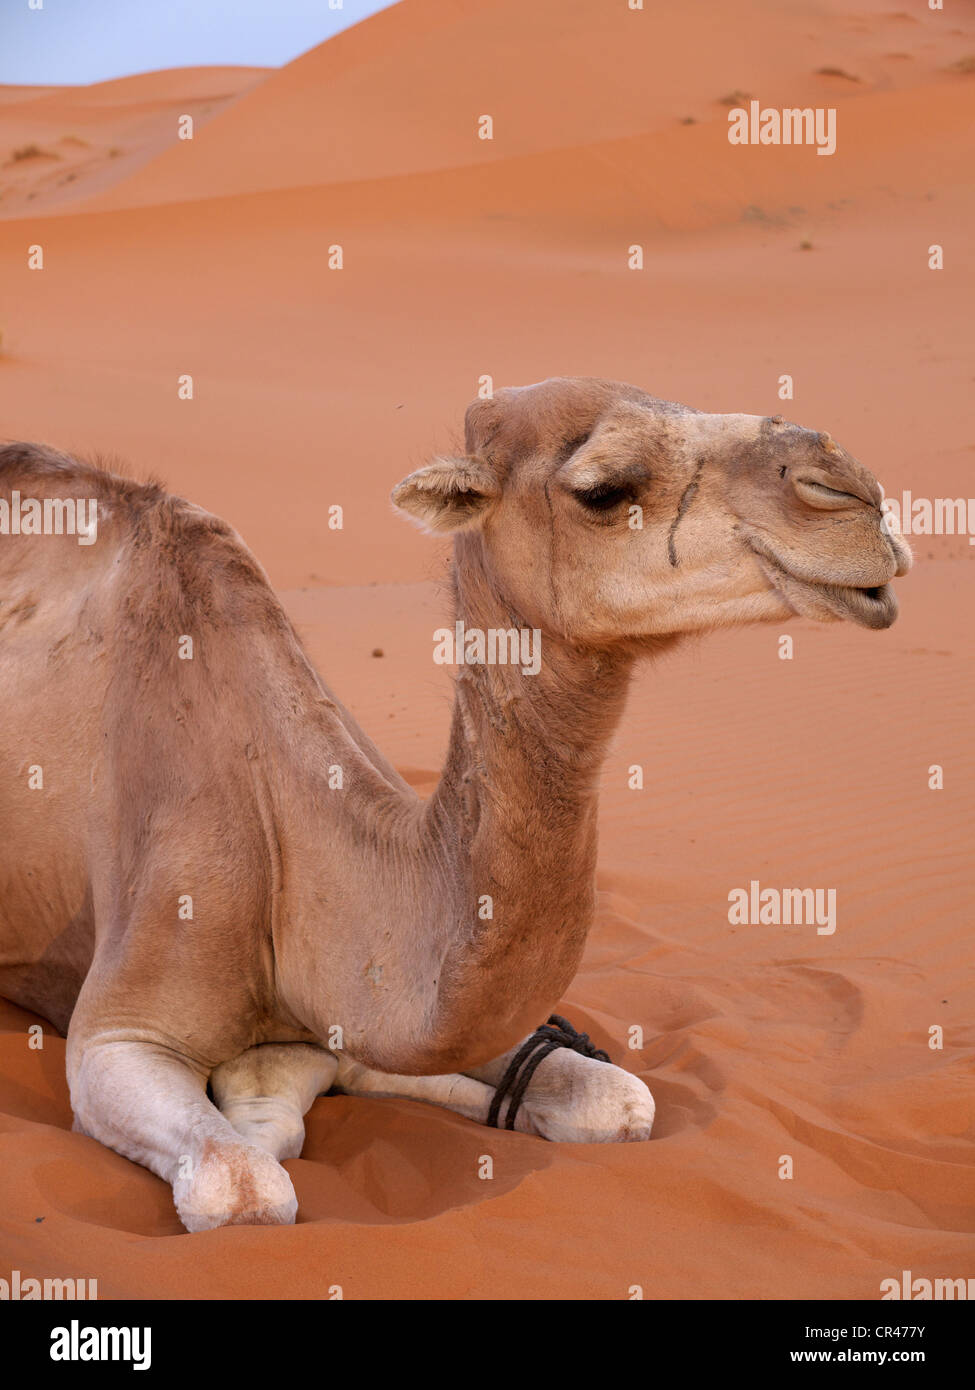 Porträt eines ruhenden Dromedar oder arabischen Kamel (Camelus Dromedarius), in den Sanddünen des Erg Chebbi Wüste Stockfoto